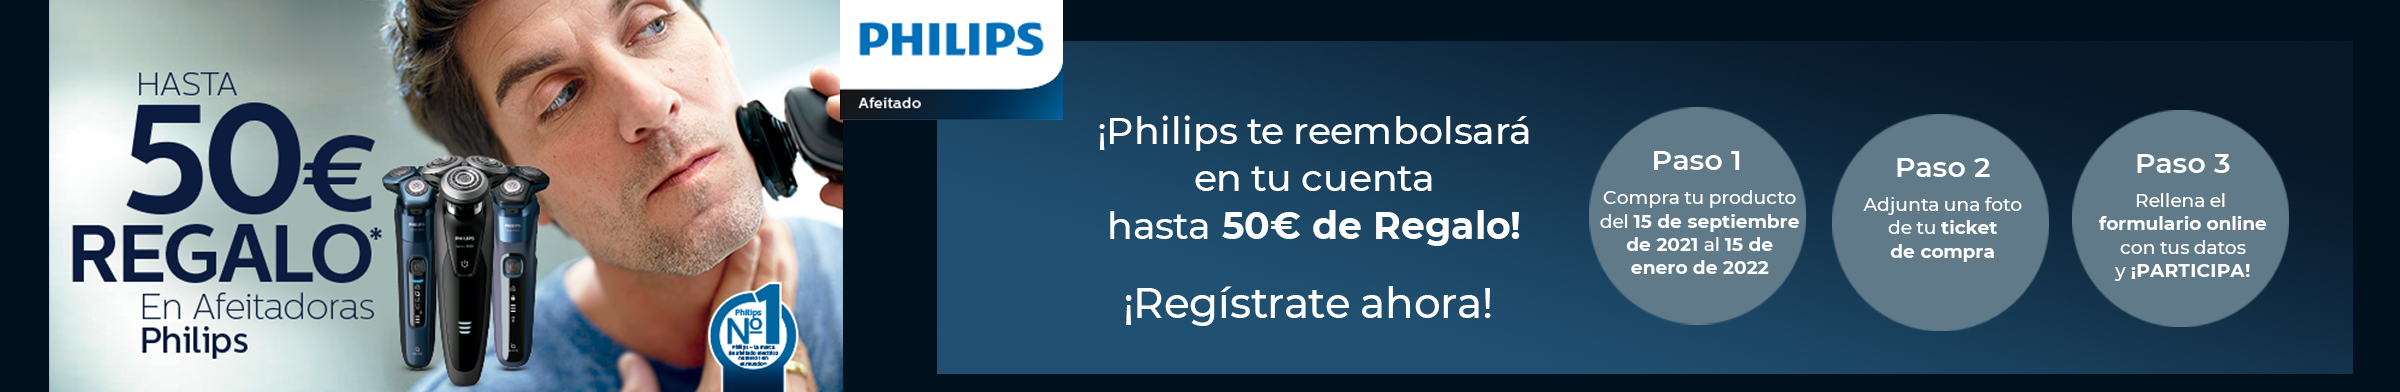 Philips Cashback de hasta 50€